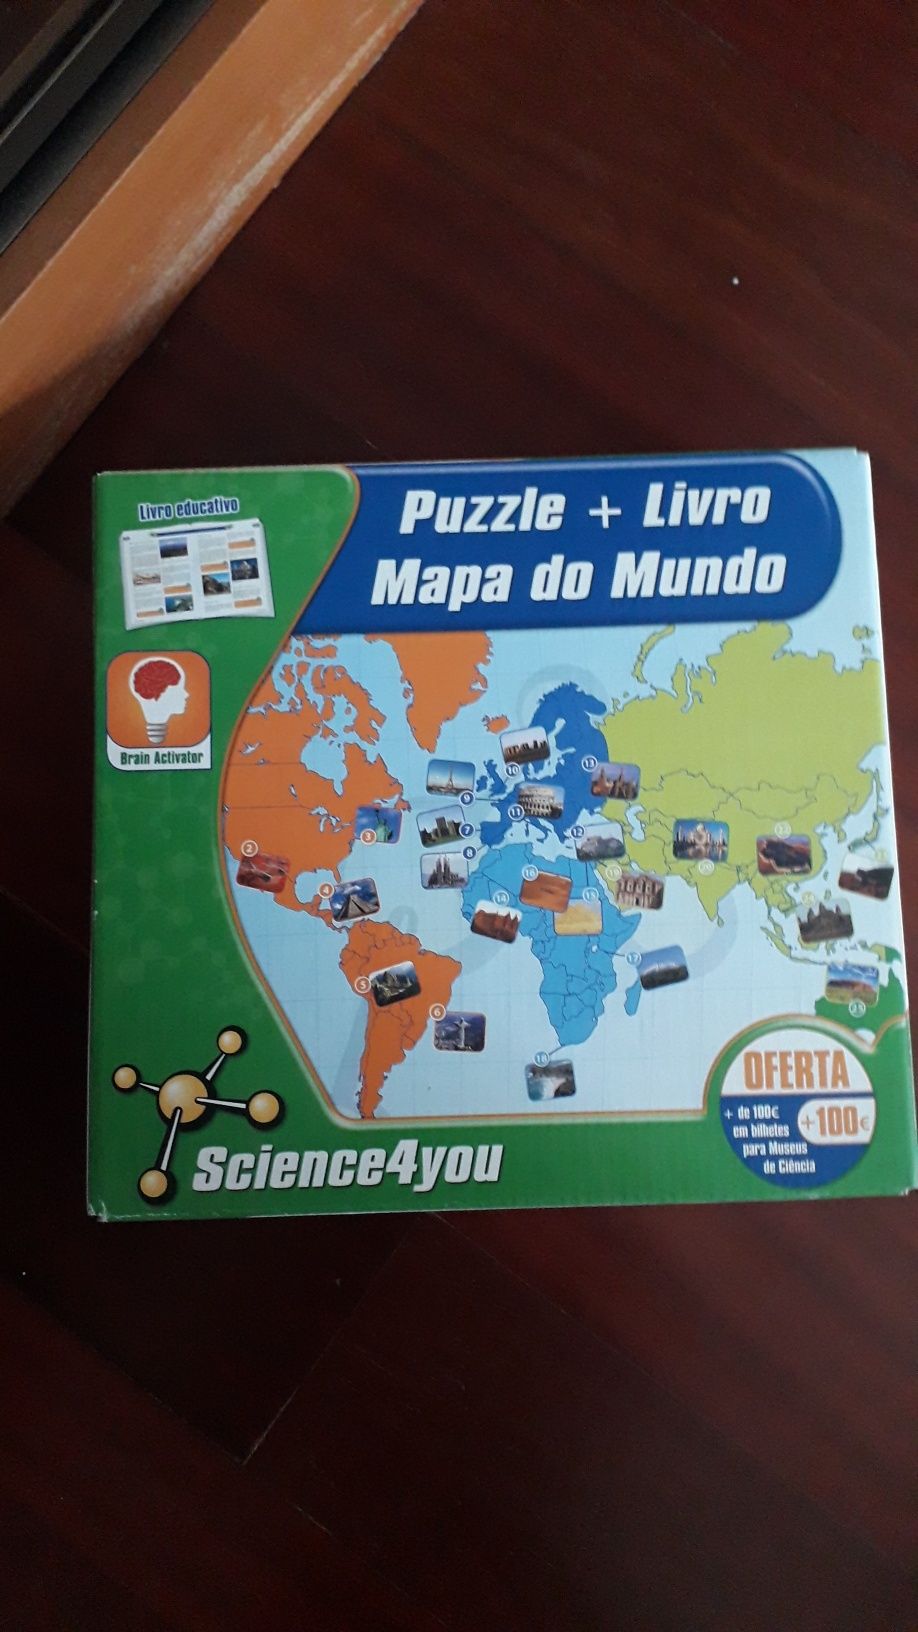 Science 4 you "Puzzle+Livro Mapa Mundo" - Ótimo estado